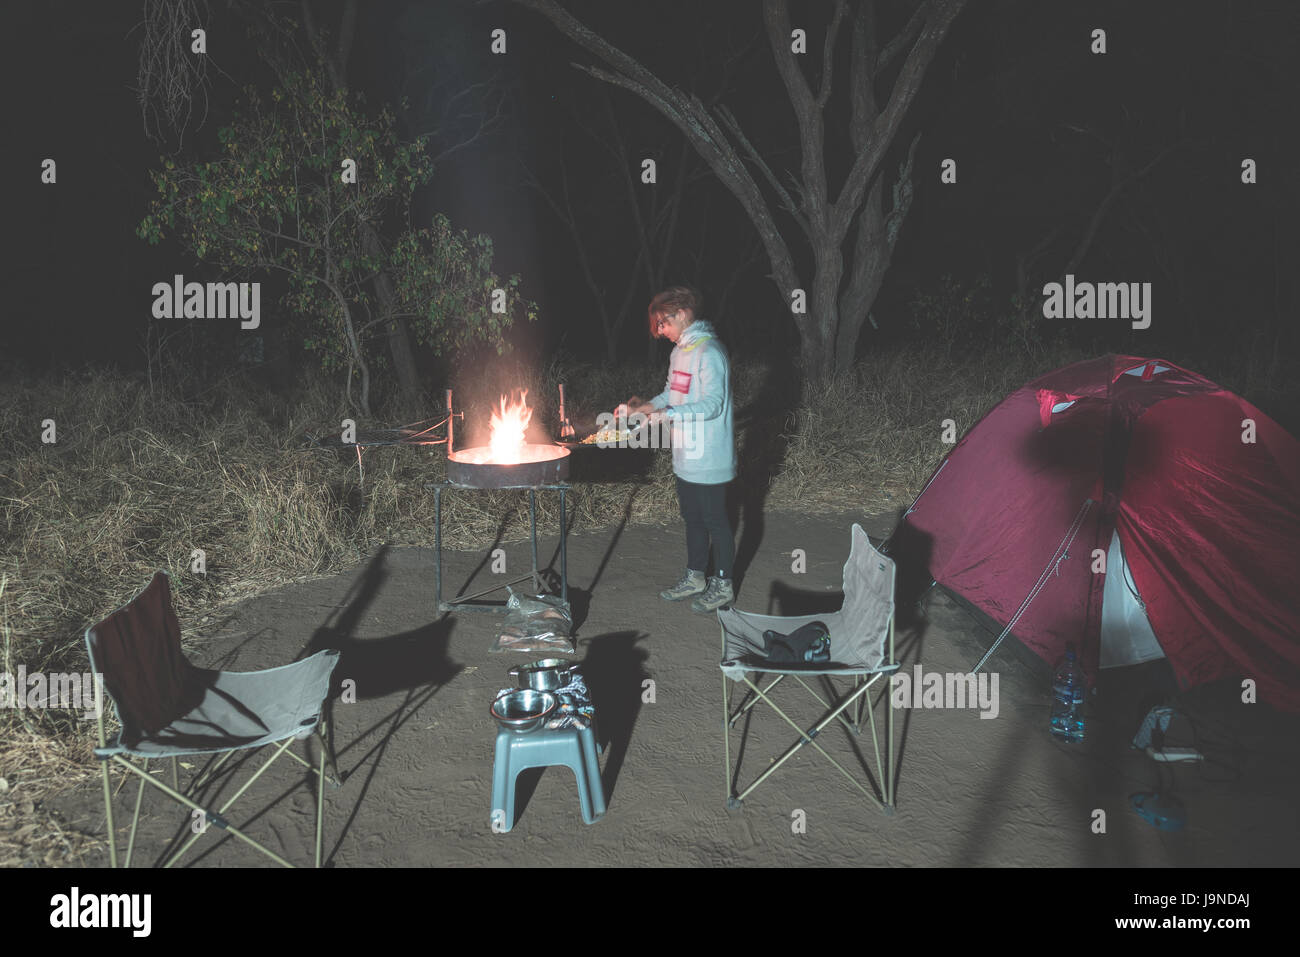 La cuisson au feu de bois avec femme et braai matériel par nuit. Tente et des chaises au premier plan. Aventures dans les parcs nationaux d'Afrique. La tonalité de l'image. Banque D'Images